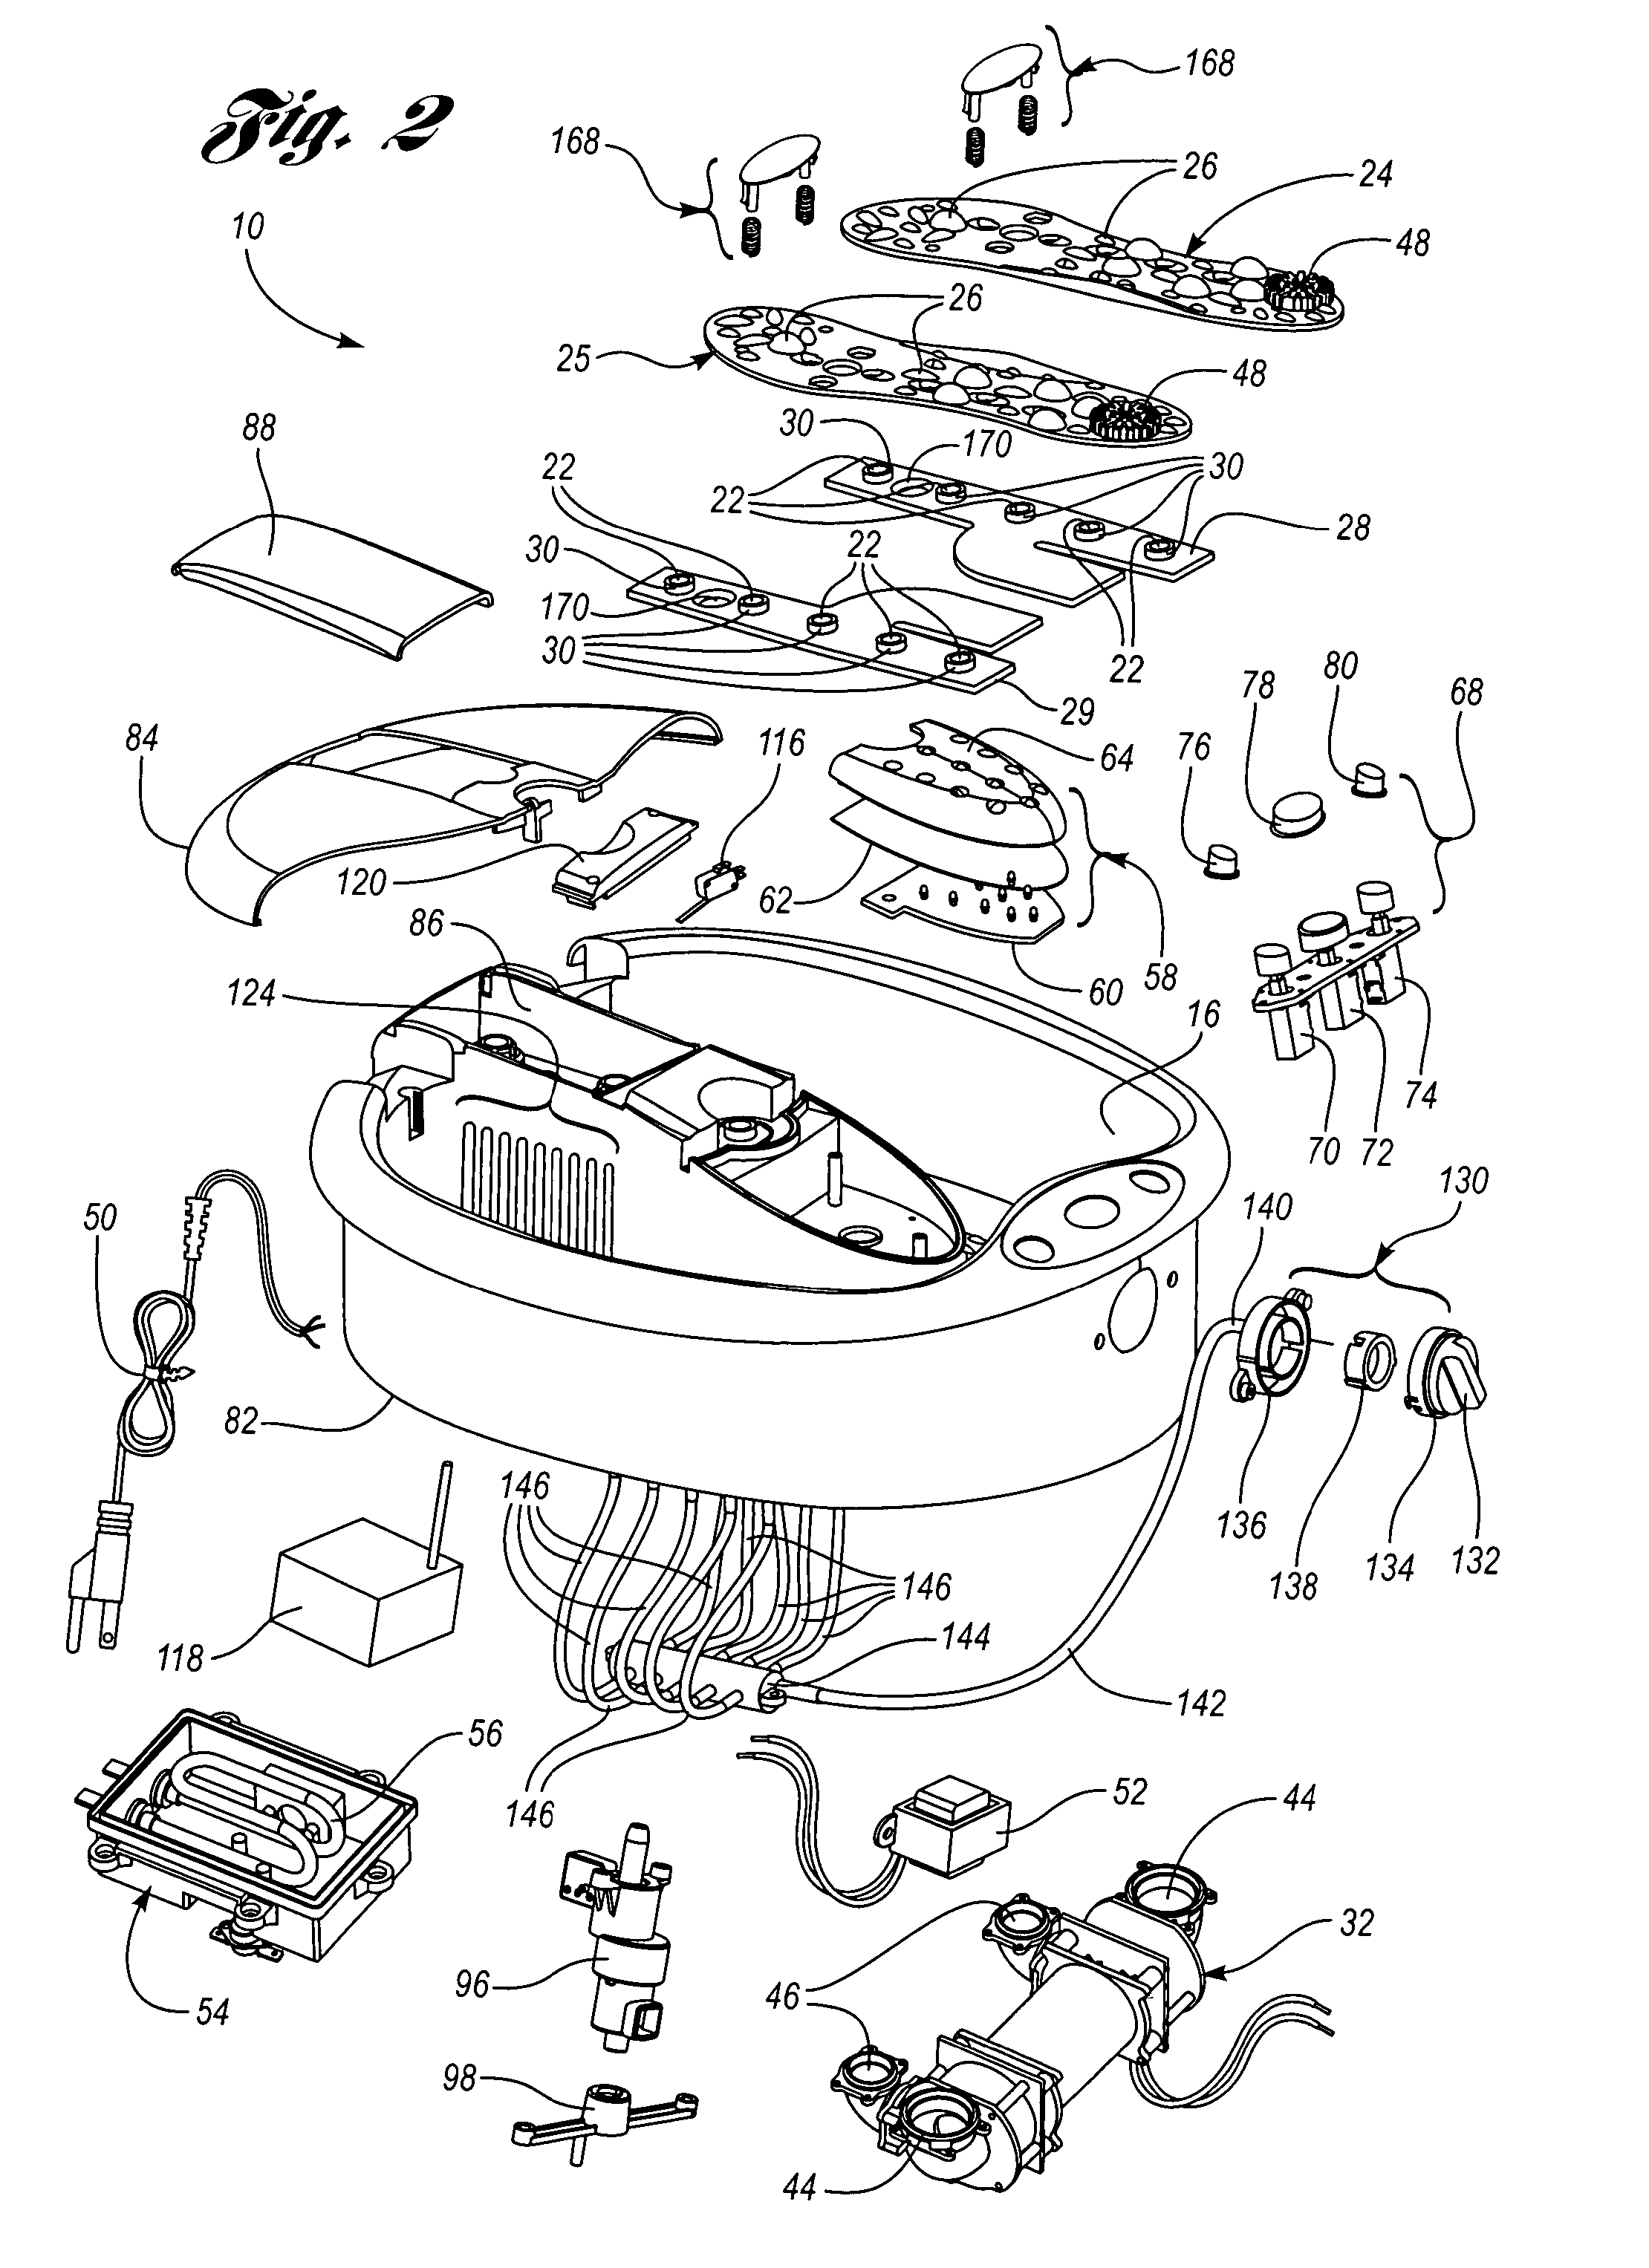 Bath apparatus